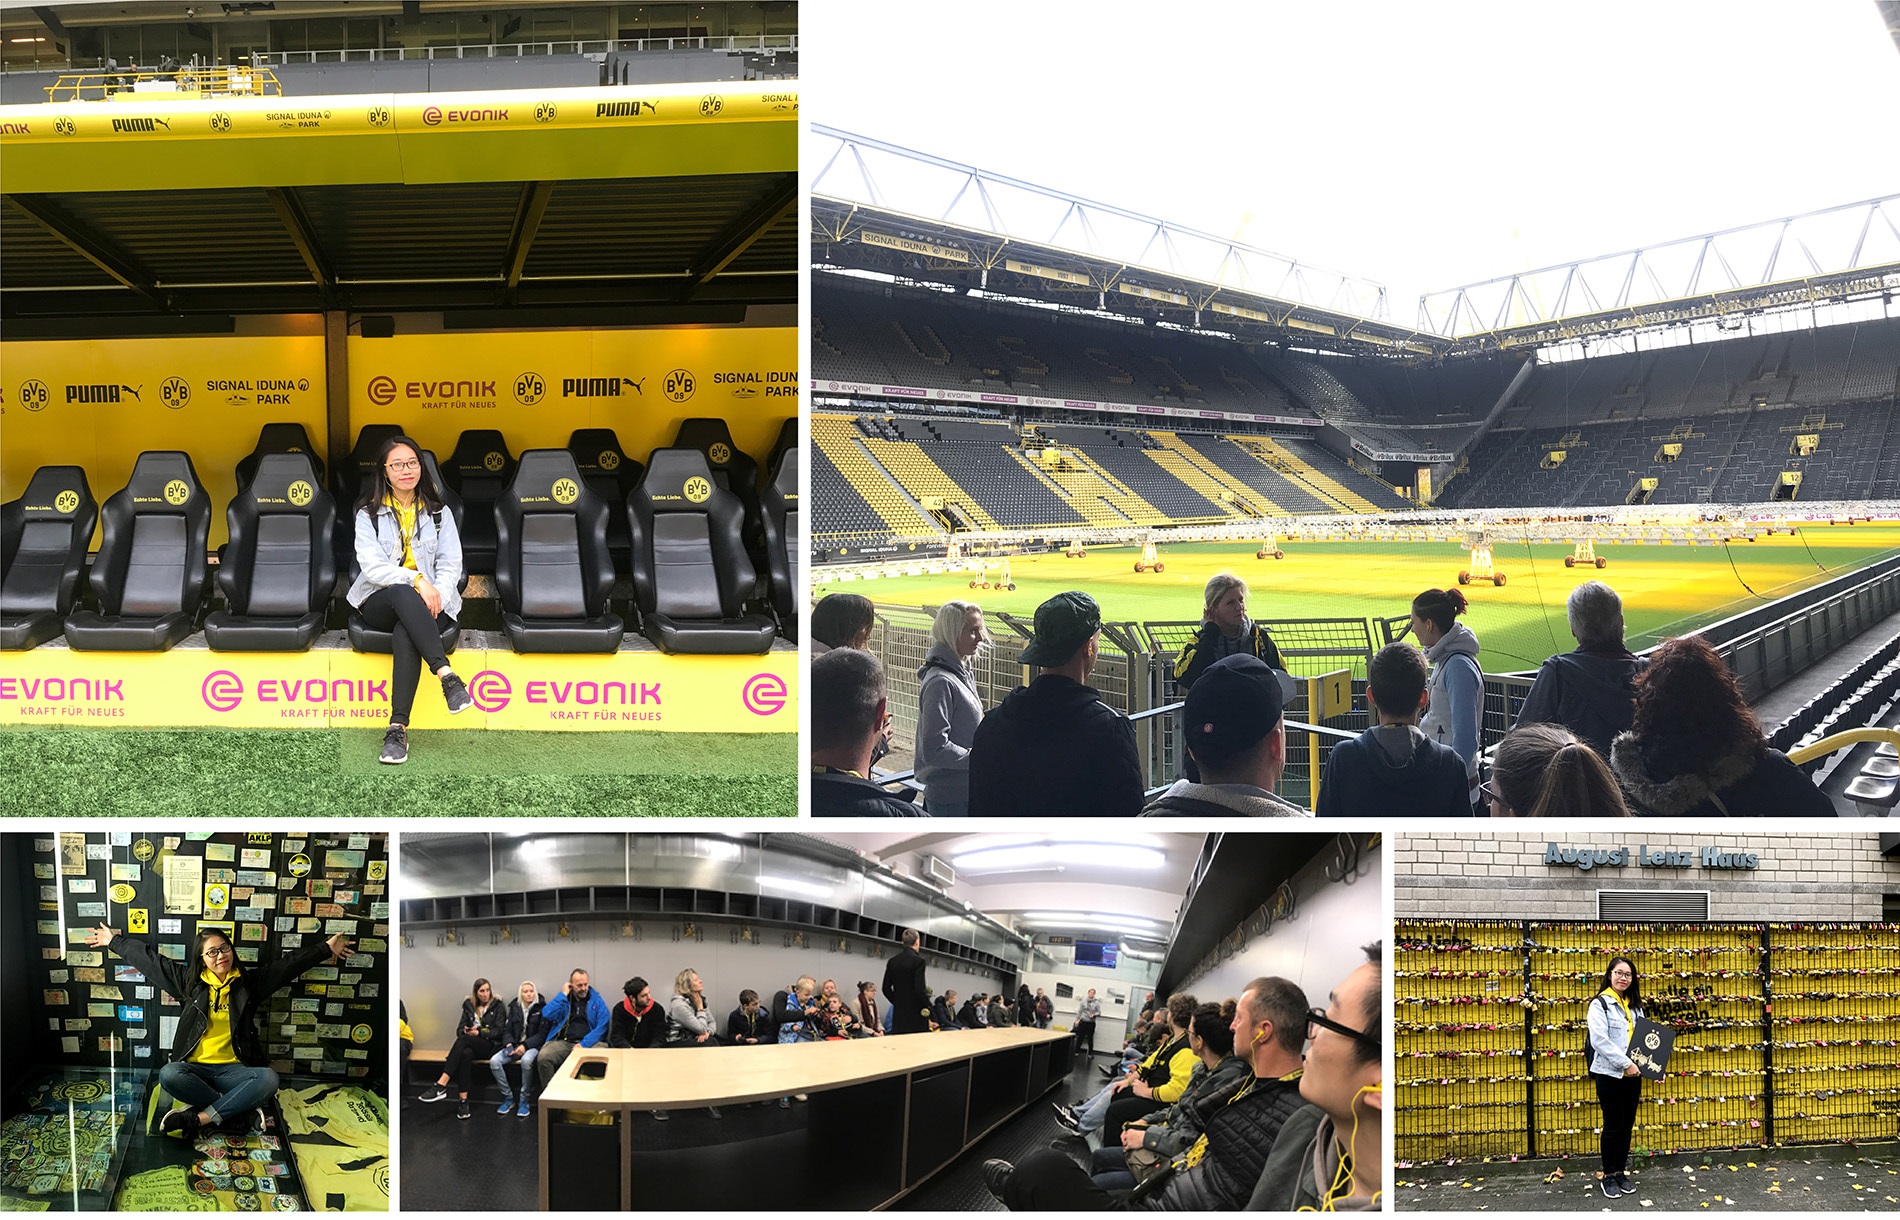 Tham quan sân vận động Signal Iduna Park là một trong những cách để cổ động viên Borussia Dortmund trải nghiệm và hiểu hơn về đội bóng. 